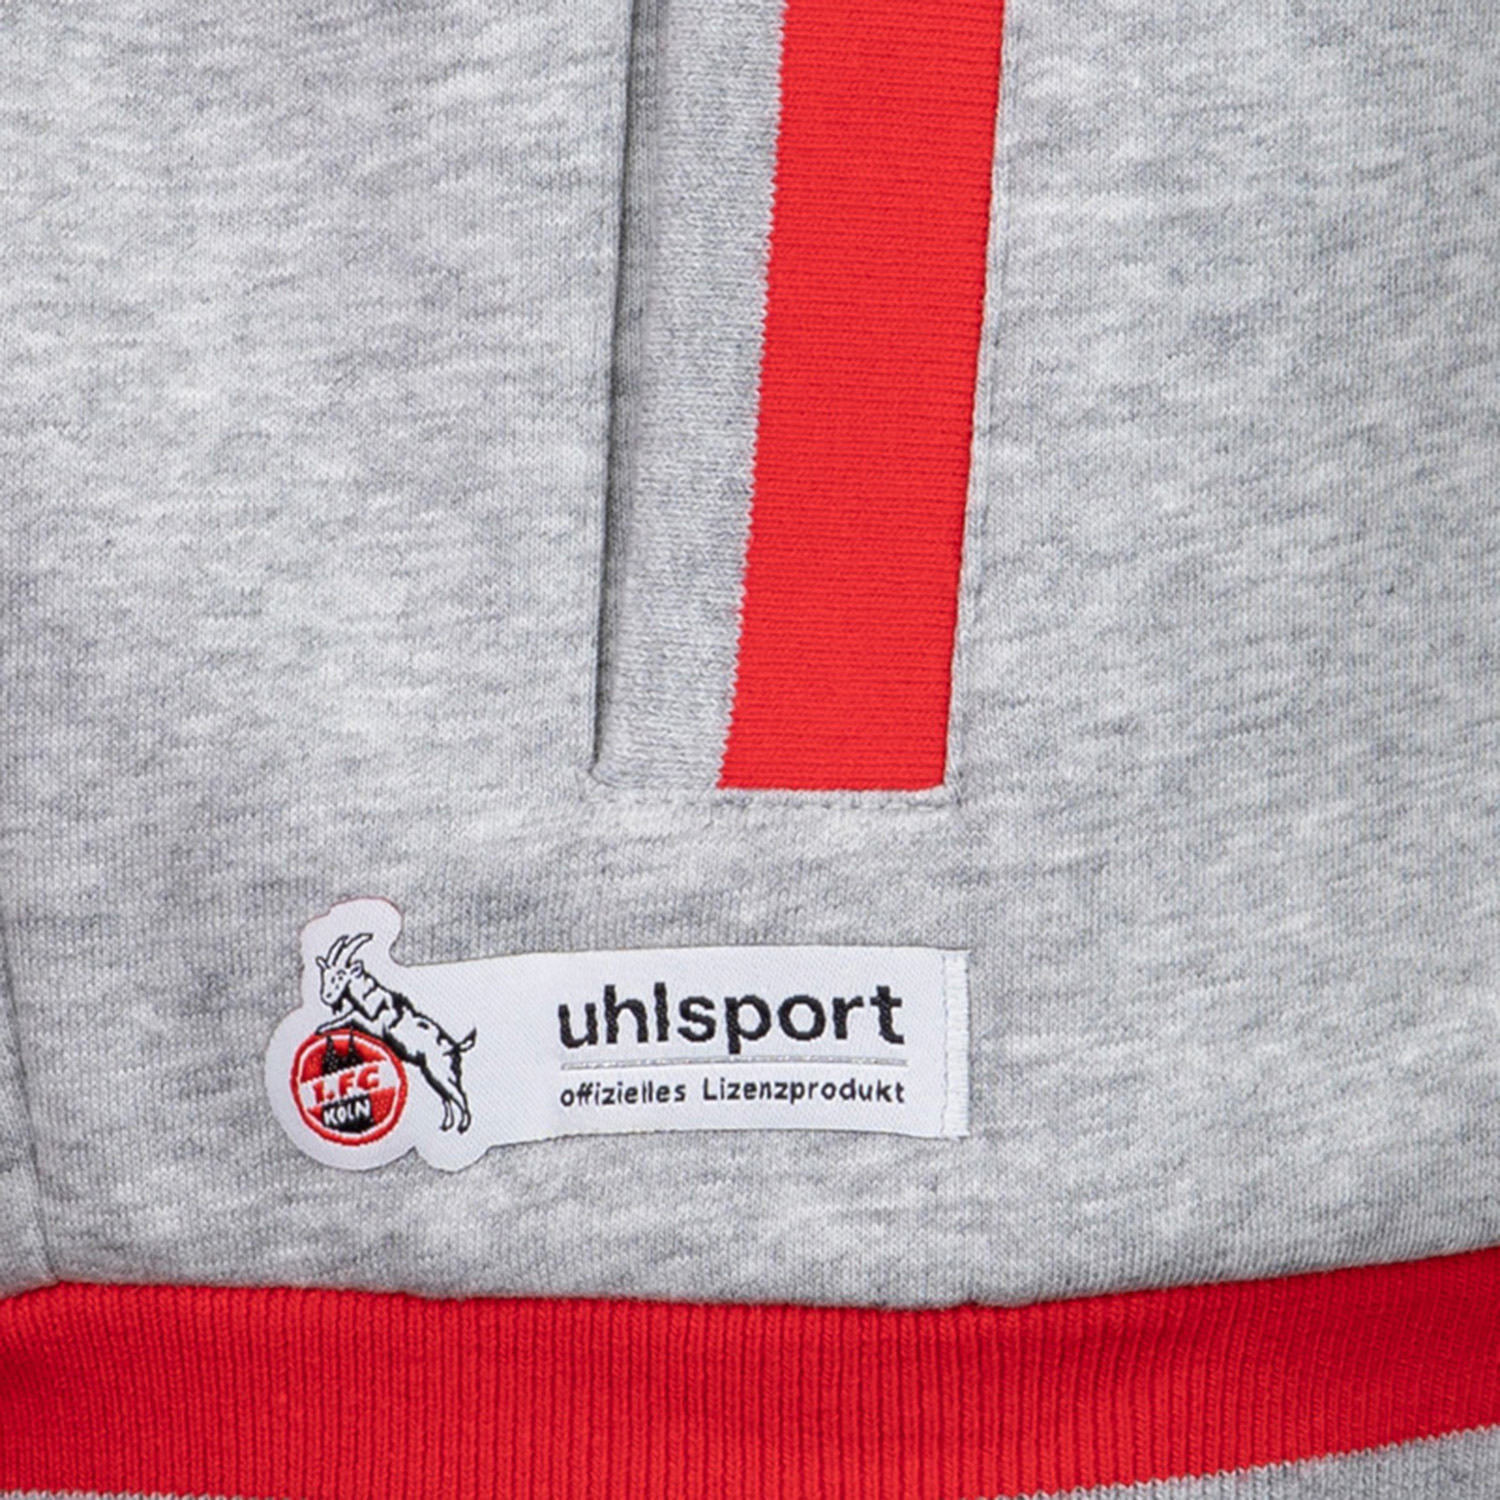 Uhlsport 1.FC Köln Sportswear Jacke Unisex Freizeitjacke Trainingsjacke Full Zip rot/grau